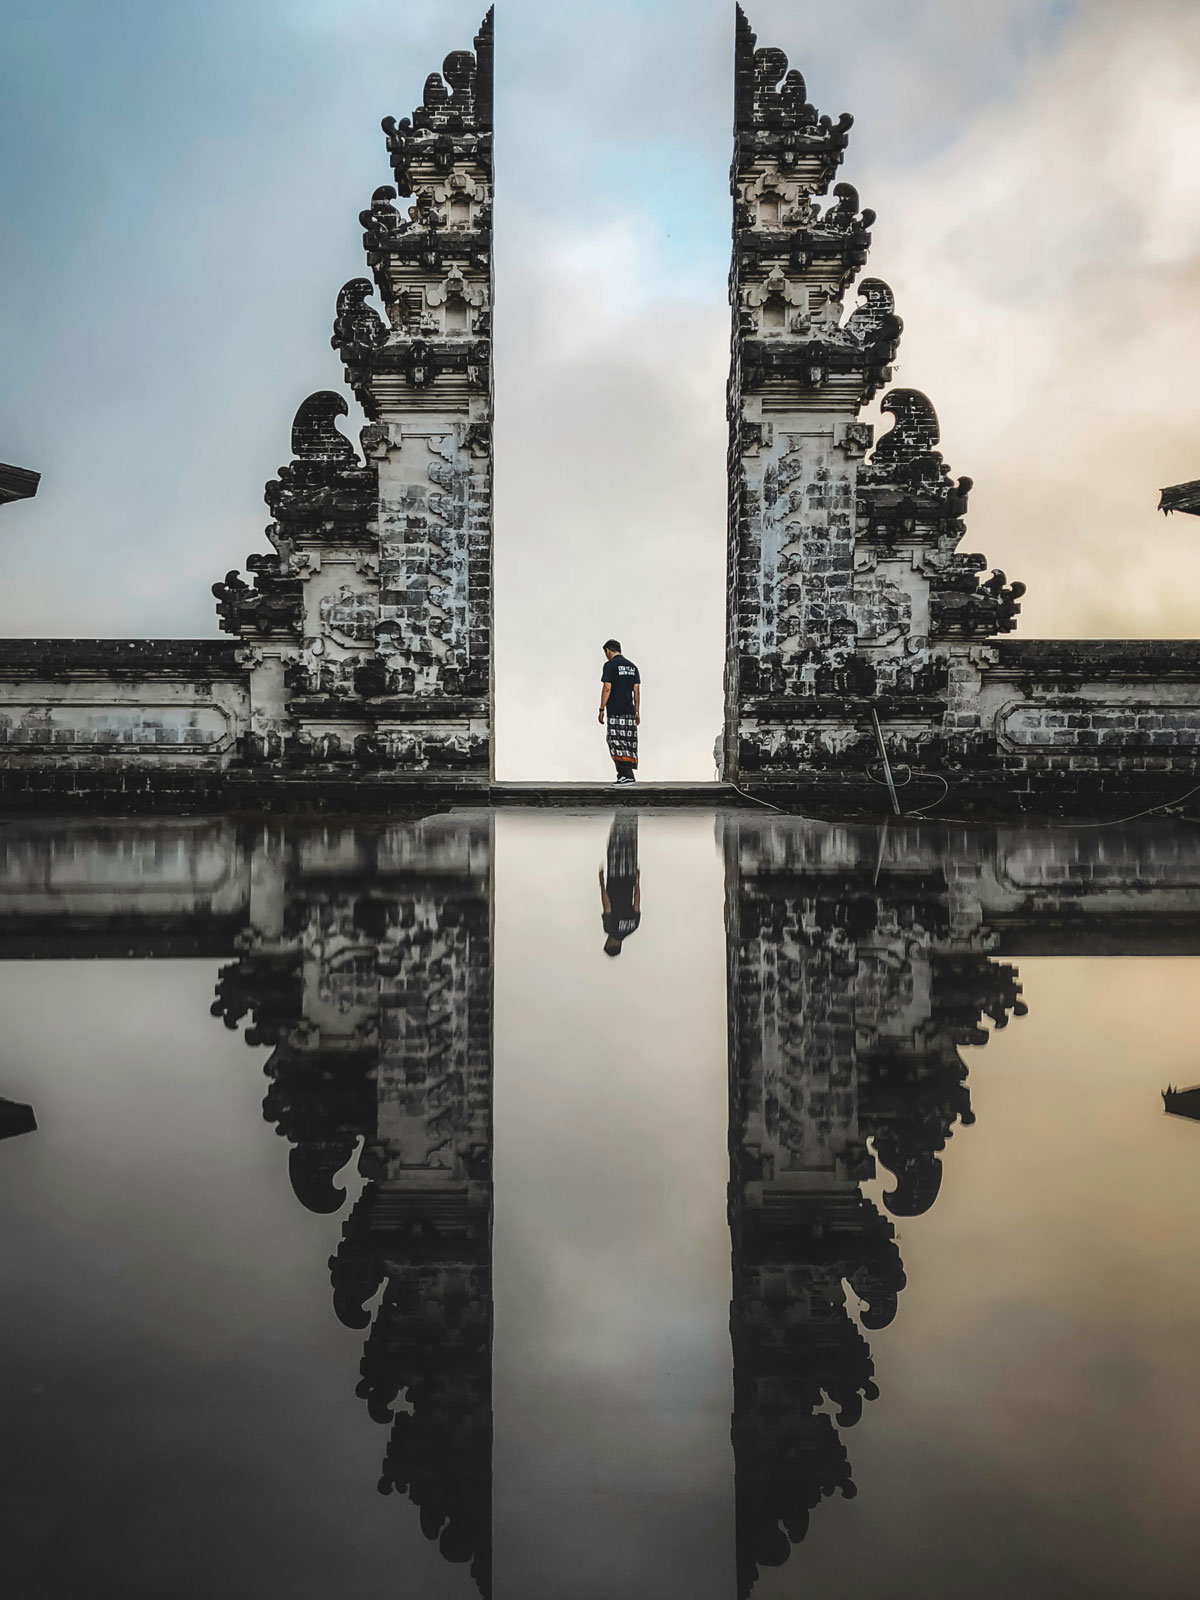 The Pura-Lempuyang temple gate in Bali, Indonesia